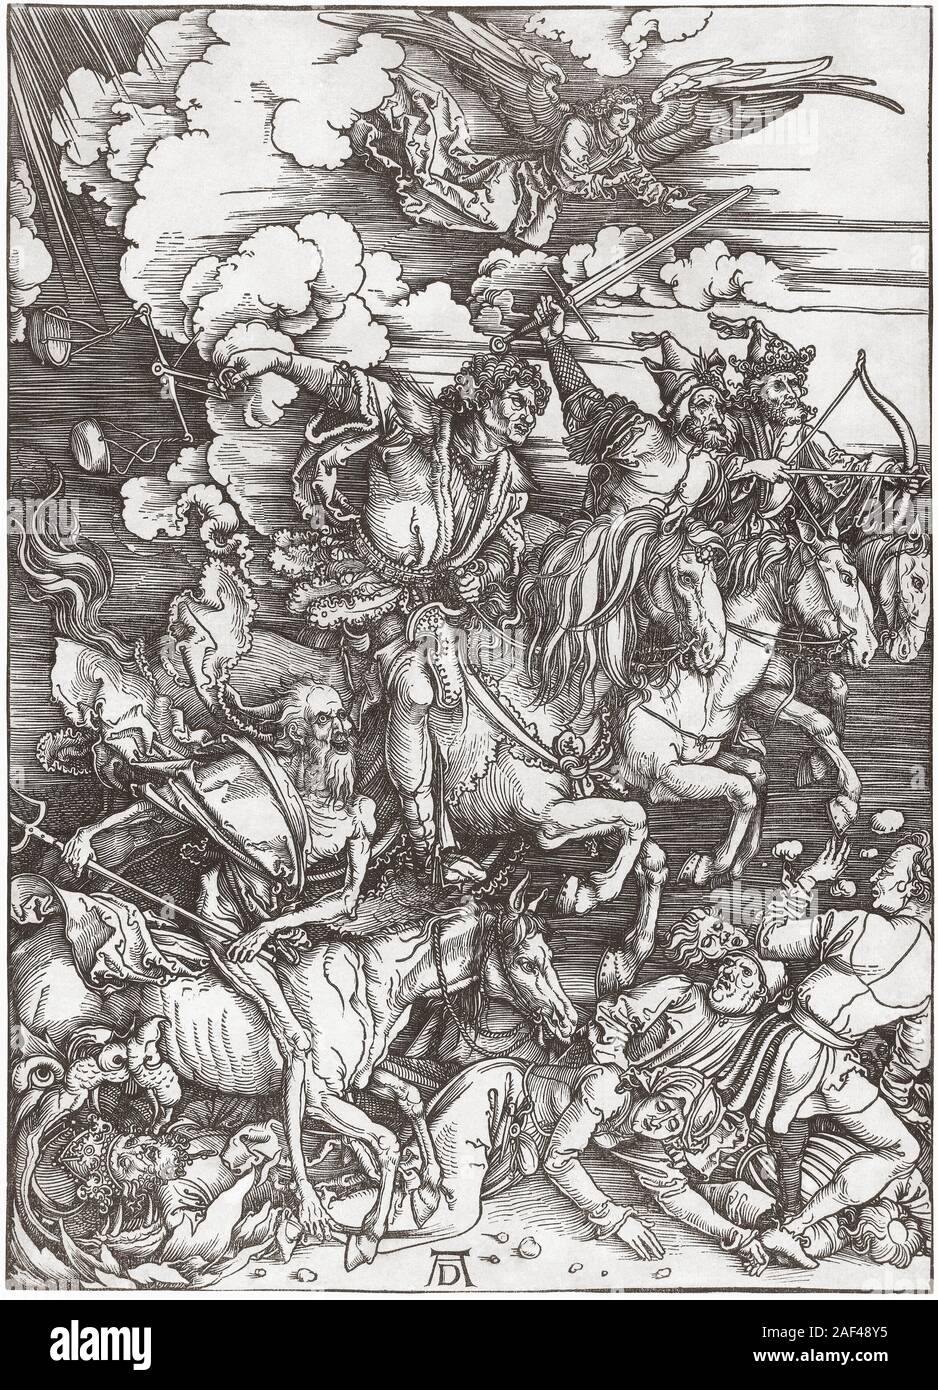 Die vier Reiter der Apokalypse. Nach einem 15. Jahrhundert Arbeiten von Albrecht Dürer. Stockfoto